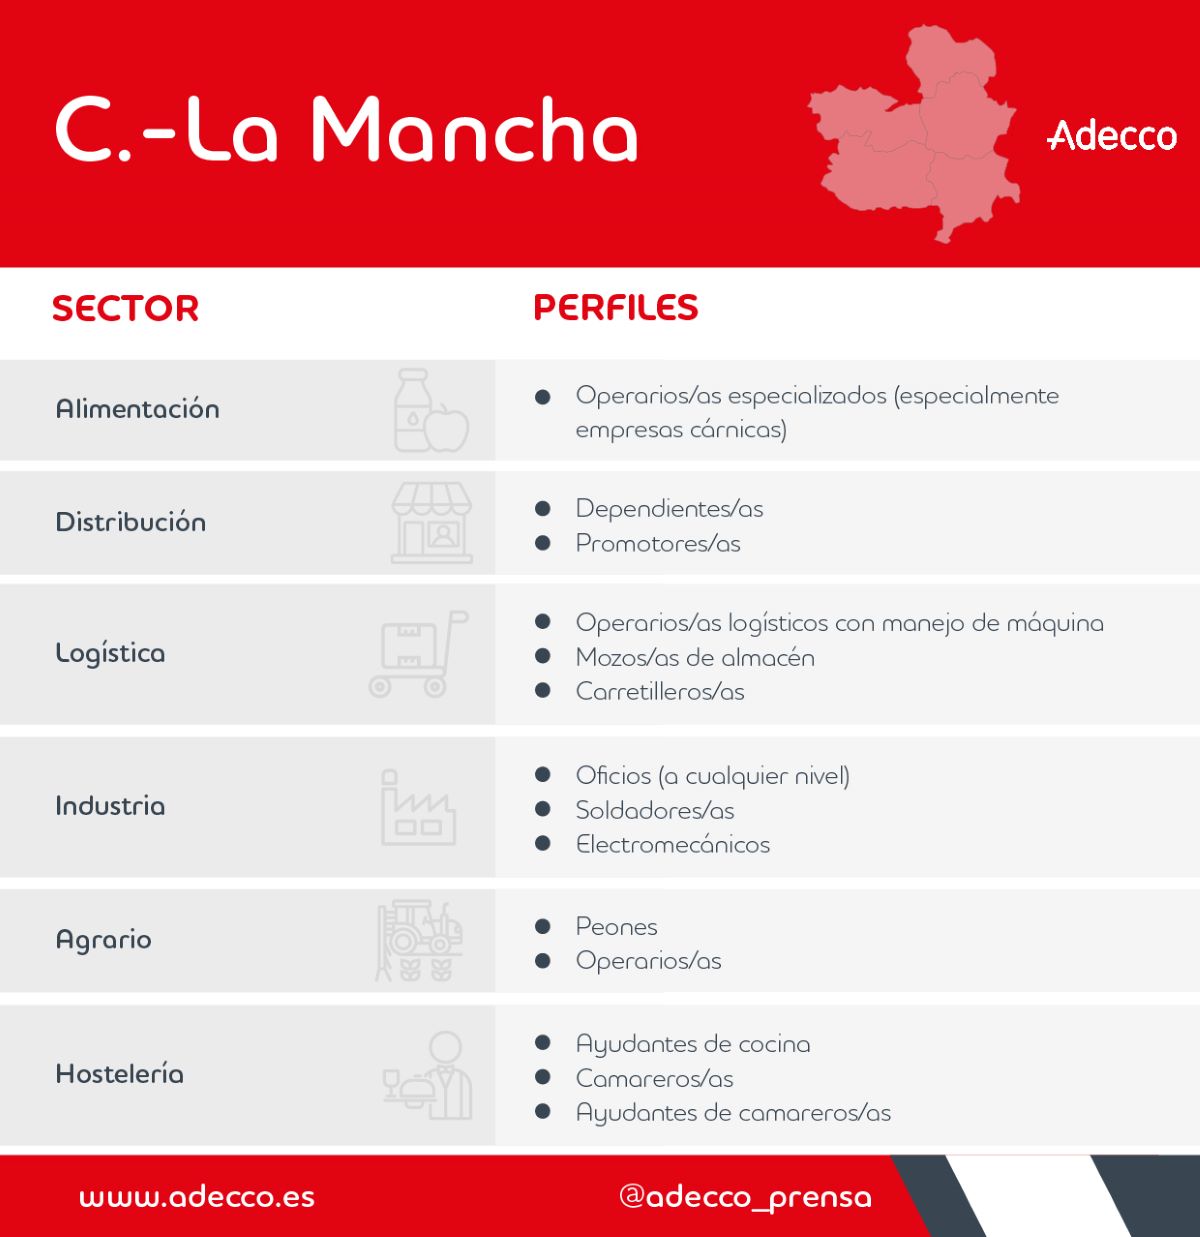 Los 14 perfiles profesionales más demandados en Castilla-La Mancha